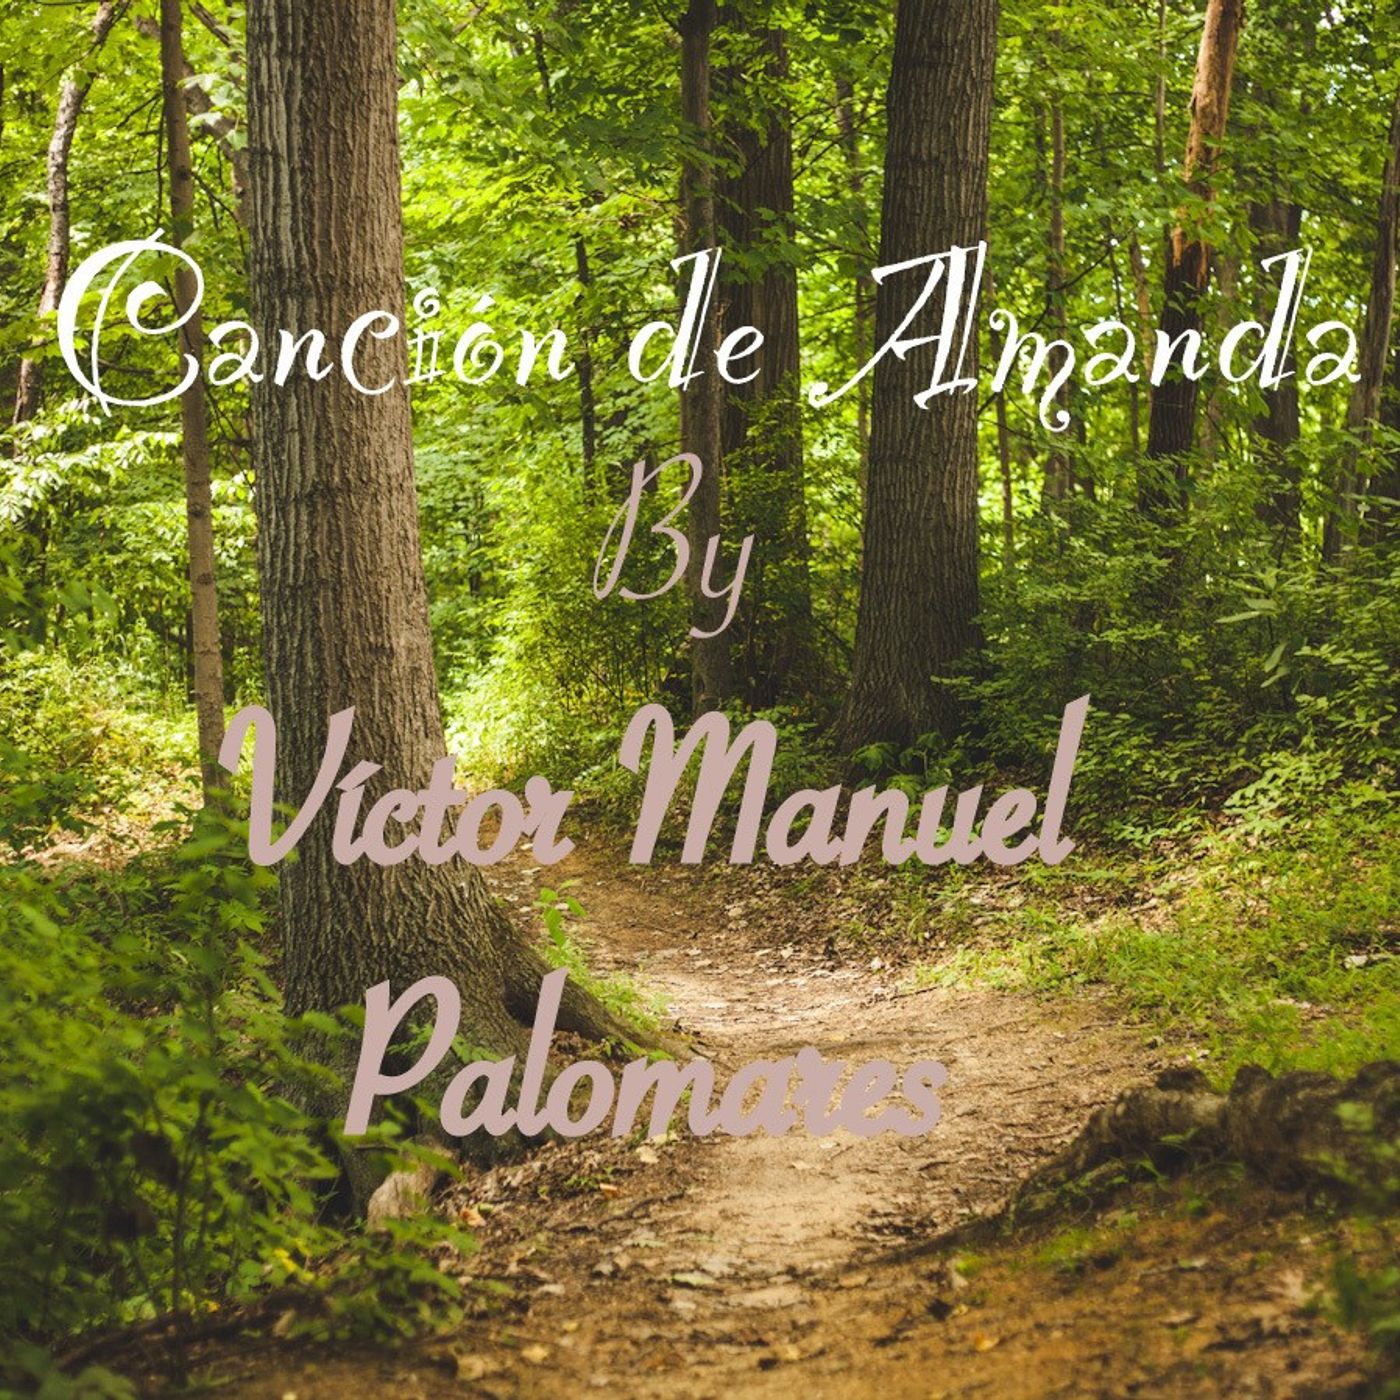 Canción de Amanda by Victor Manuel Palomares